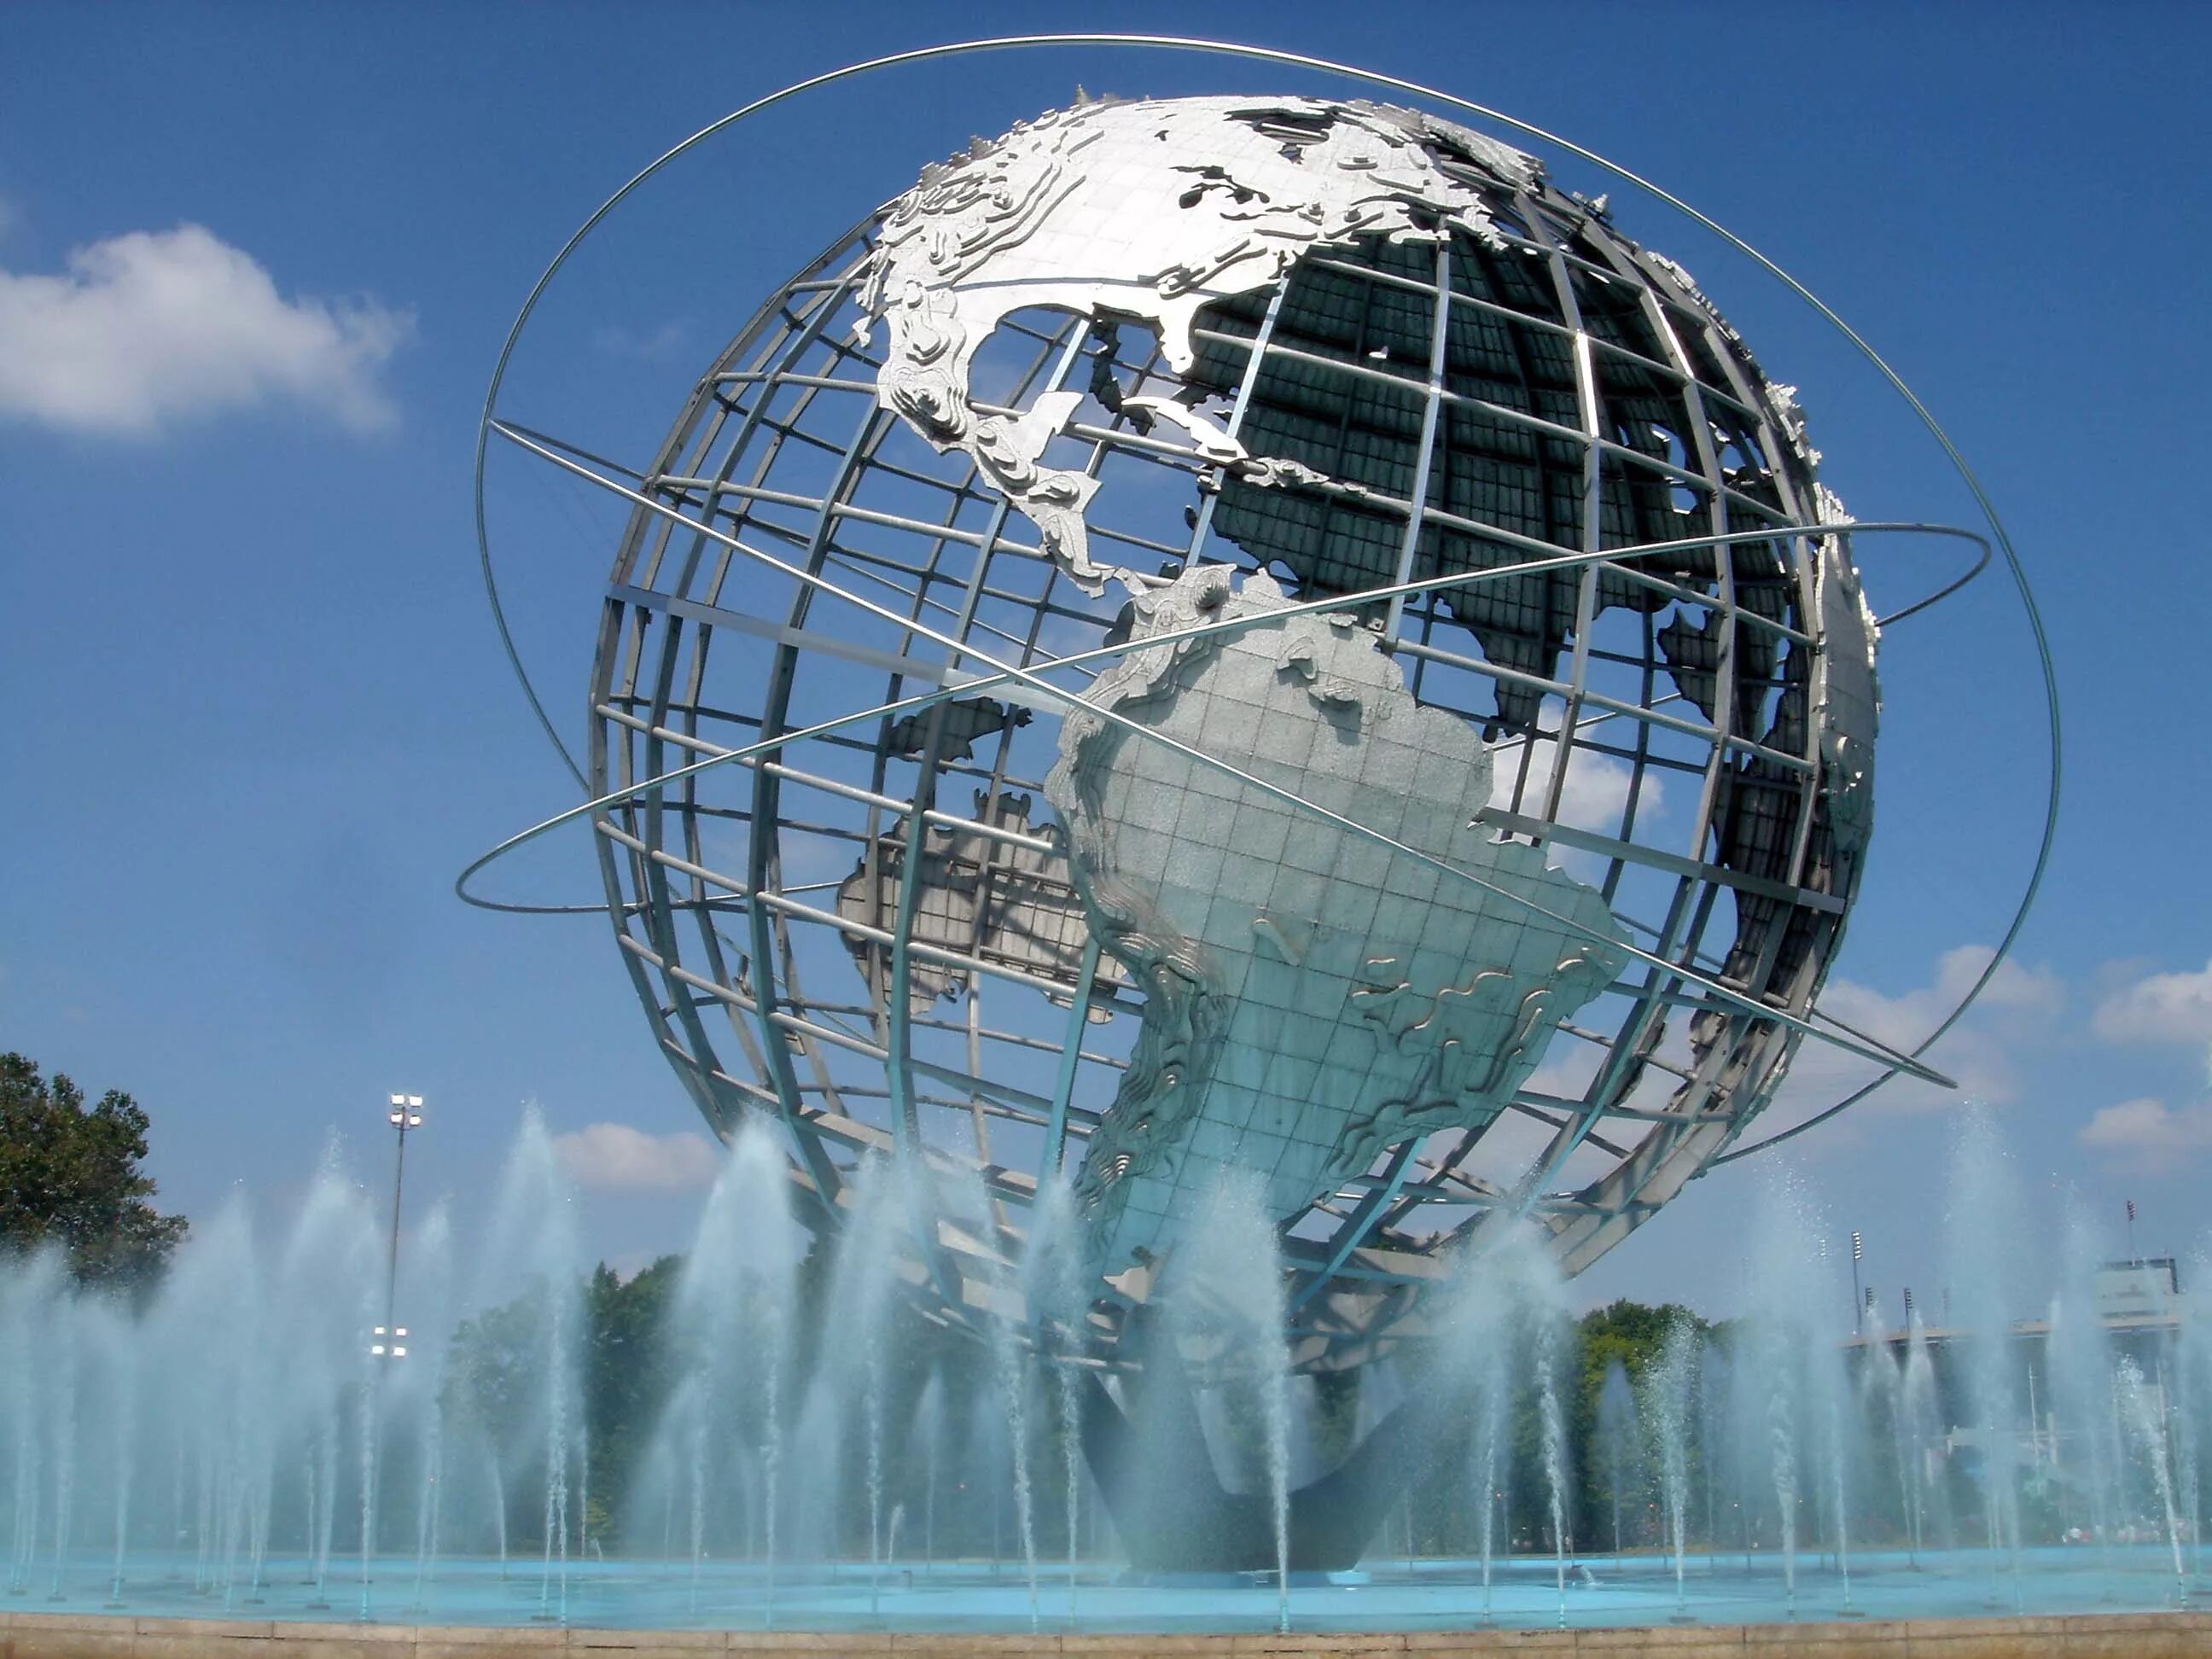 Памятник глобус. Фонтан Унисфера, Нью-Йорк, США. Флашинг-Медоус - корона-парк. Памятник в виде земного шара.